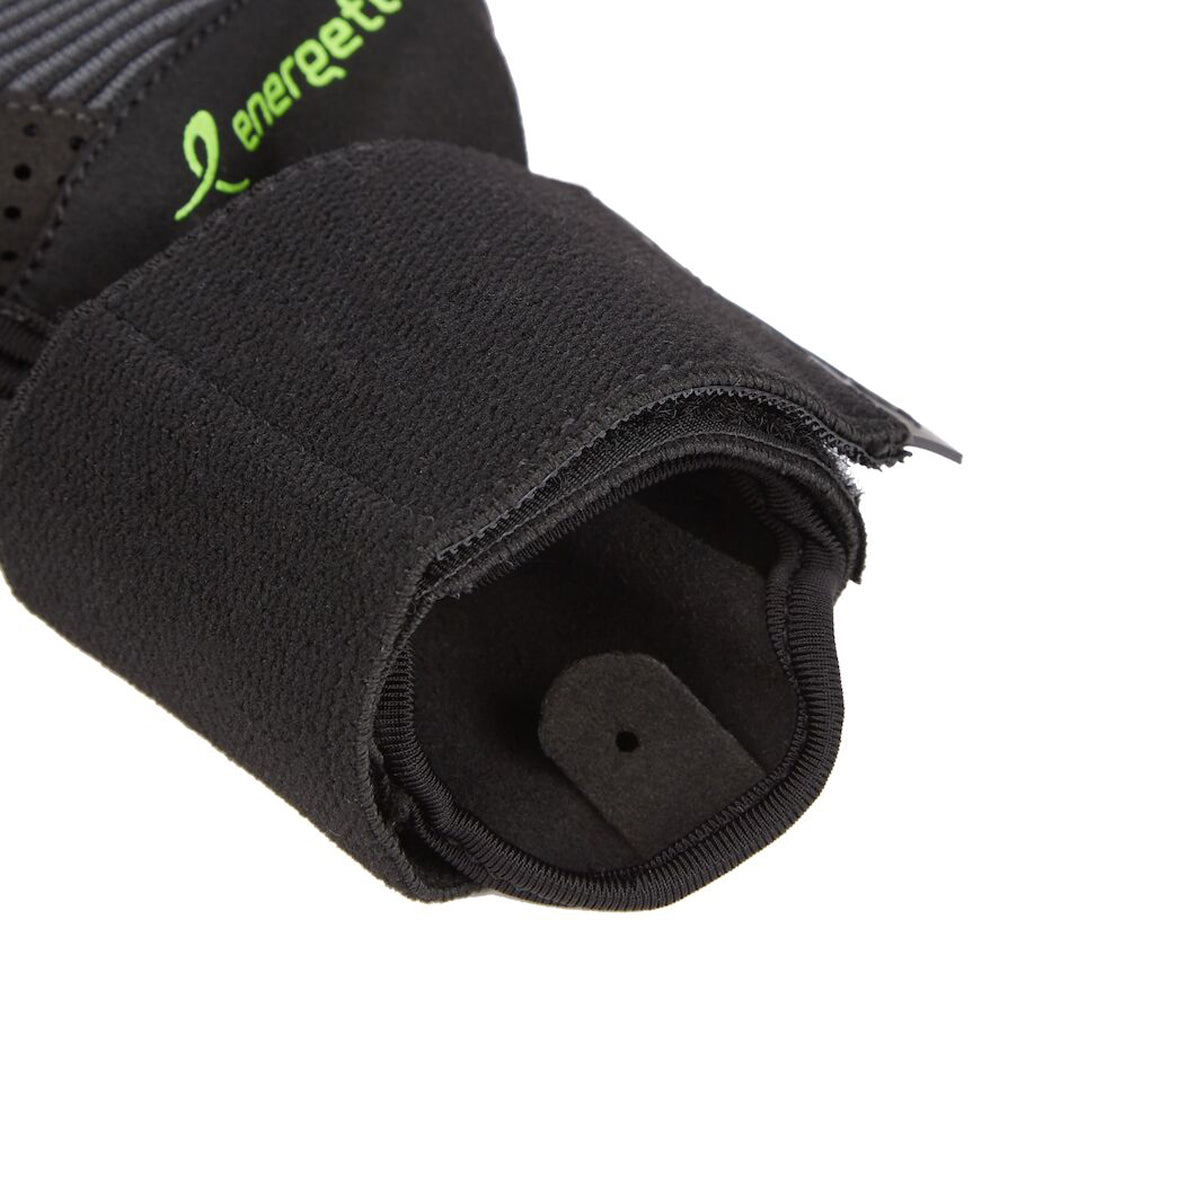 Mfg550 Fitness Gloves